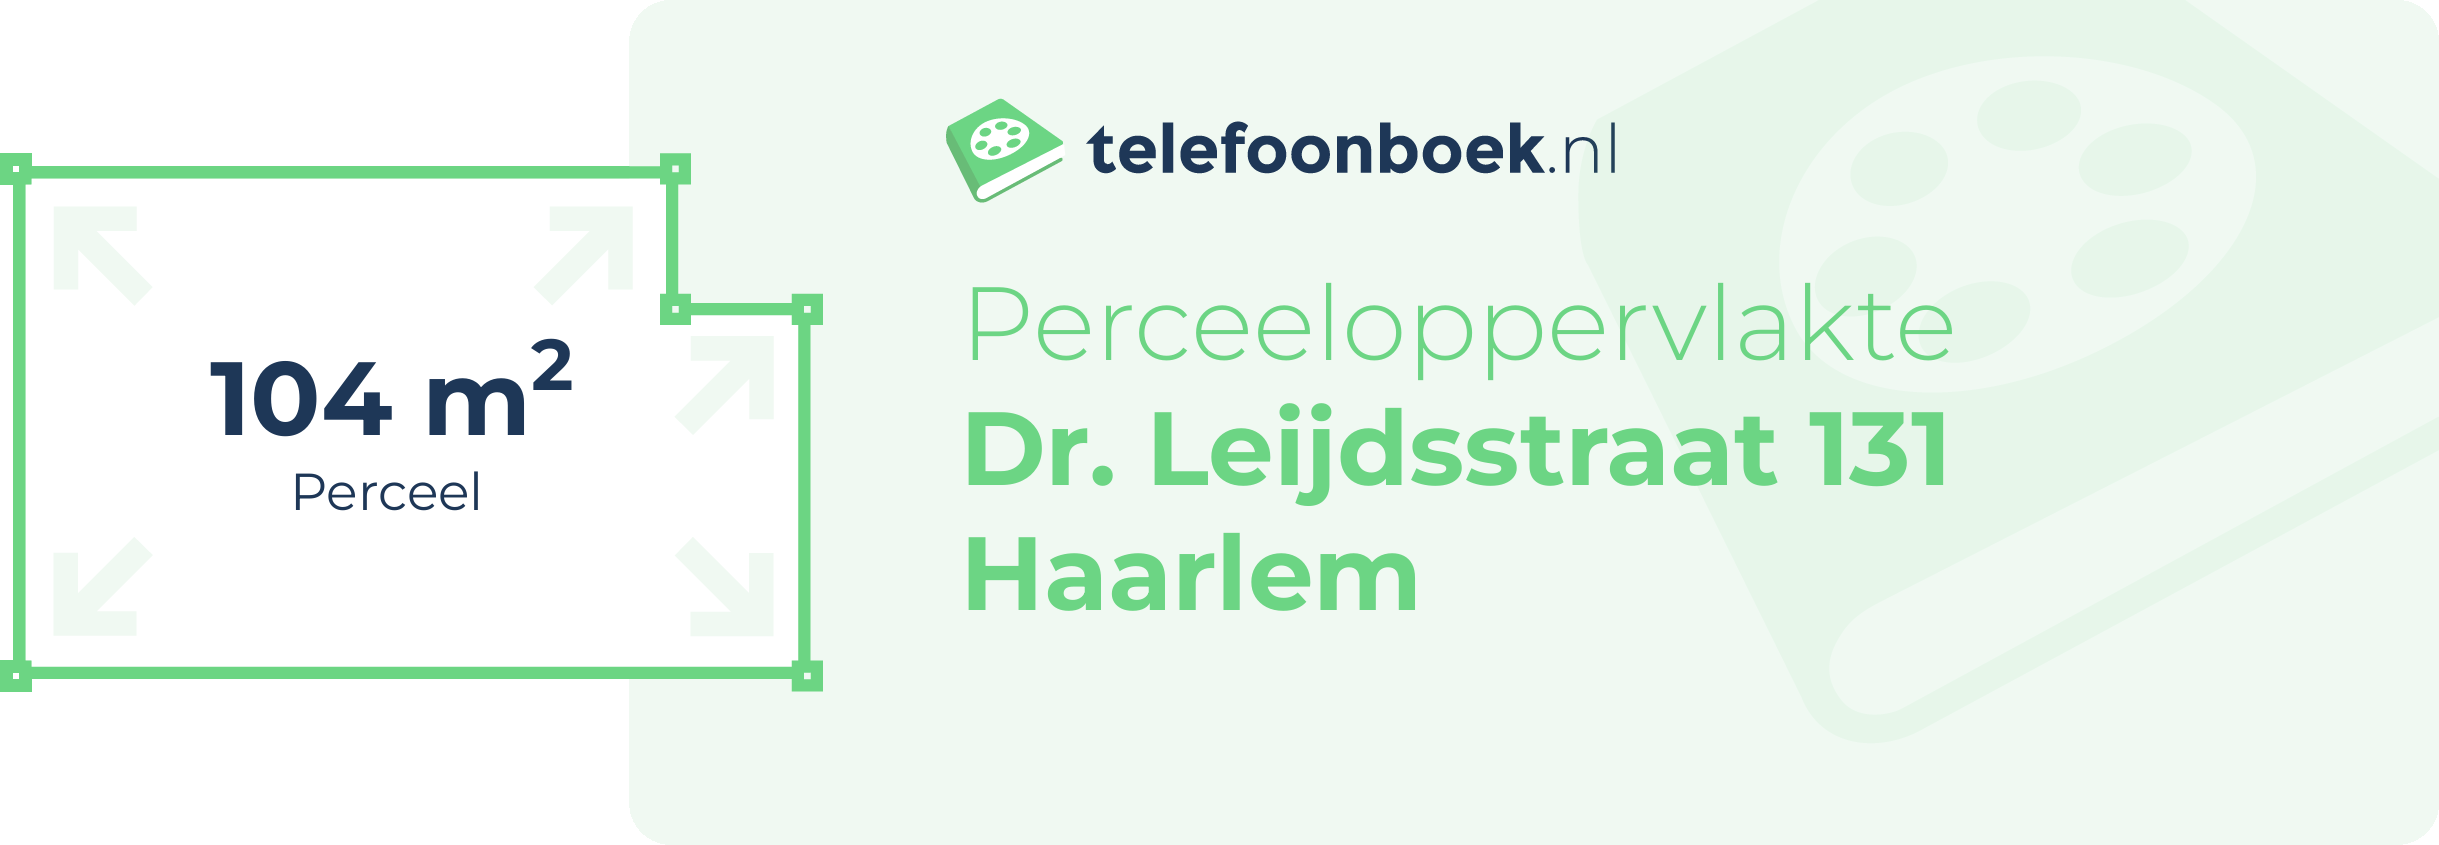 Perceeloppervlakte Dr. Leijdsstraat 131 Haarlem